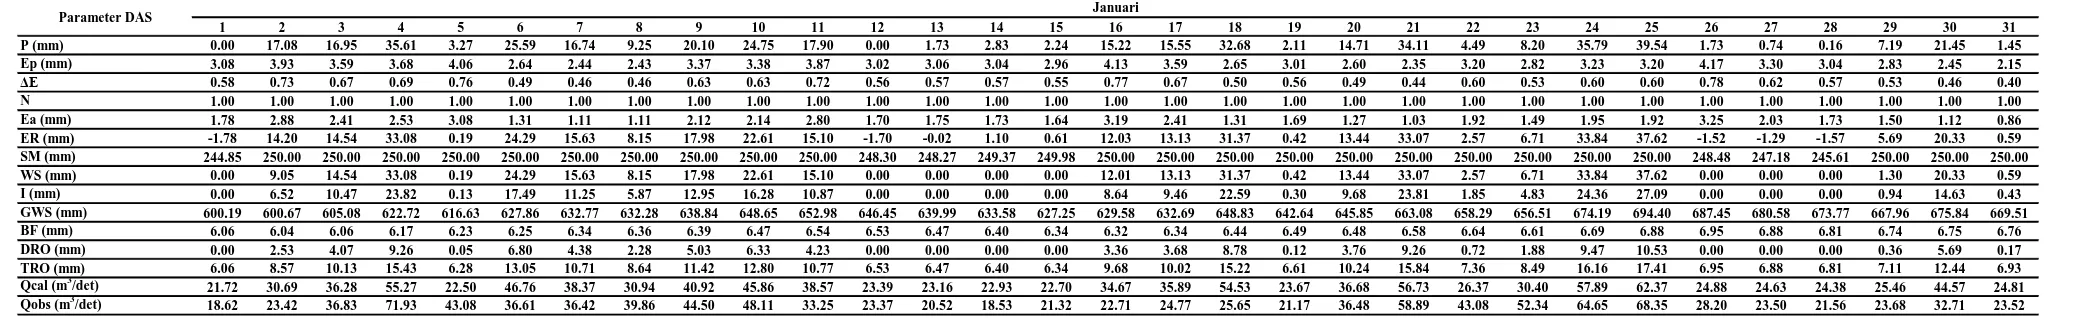 Gambar 3. Perbandingan antara Debit Terukur dengan Debit Analitik metode Mock bulan Januari 2011